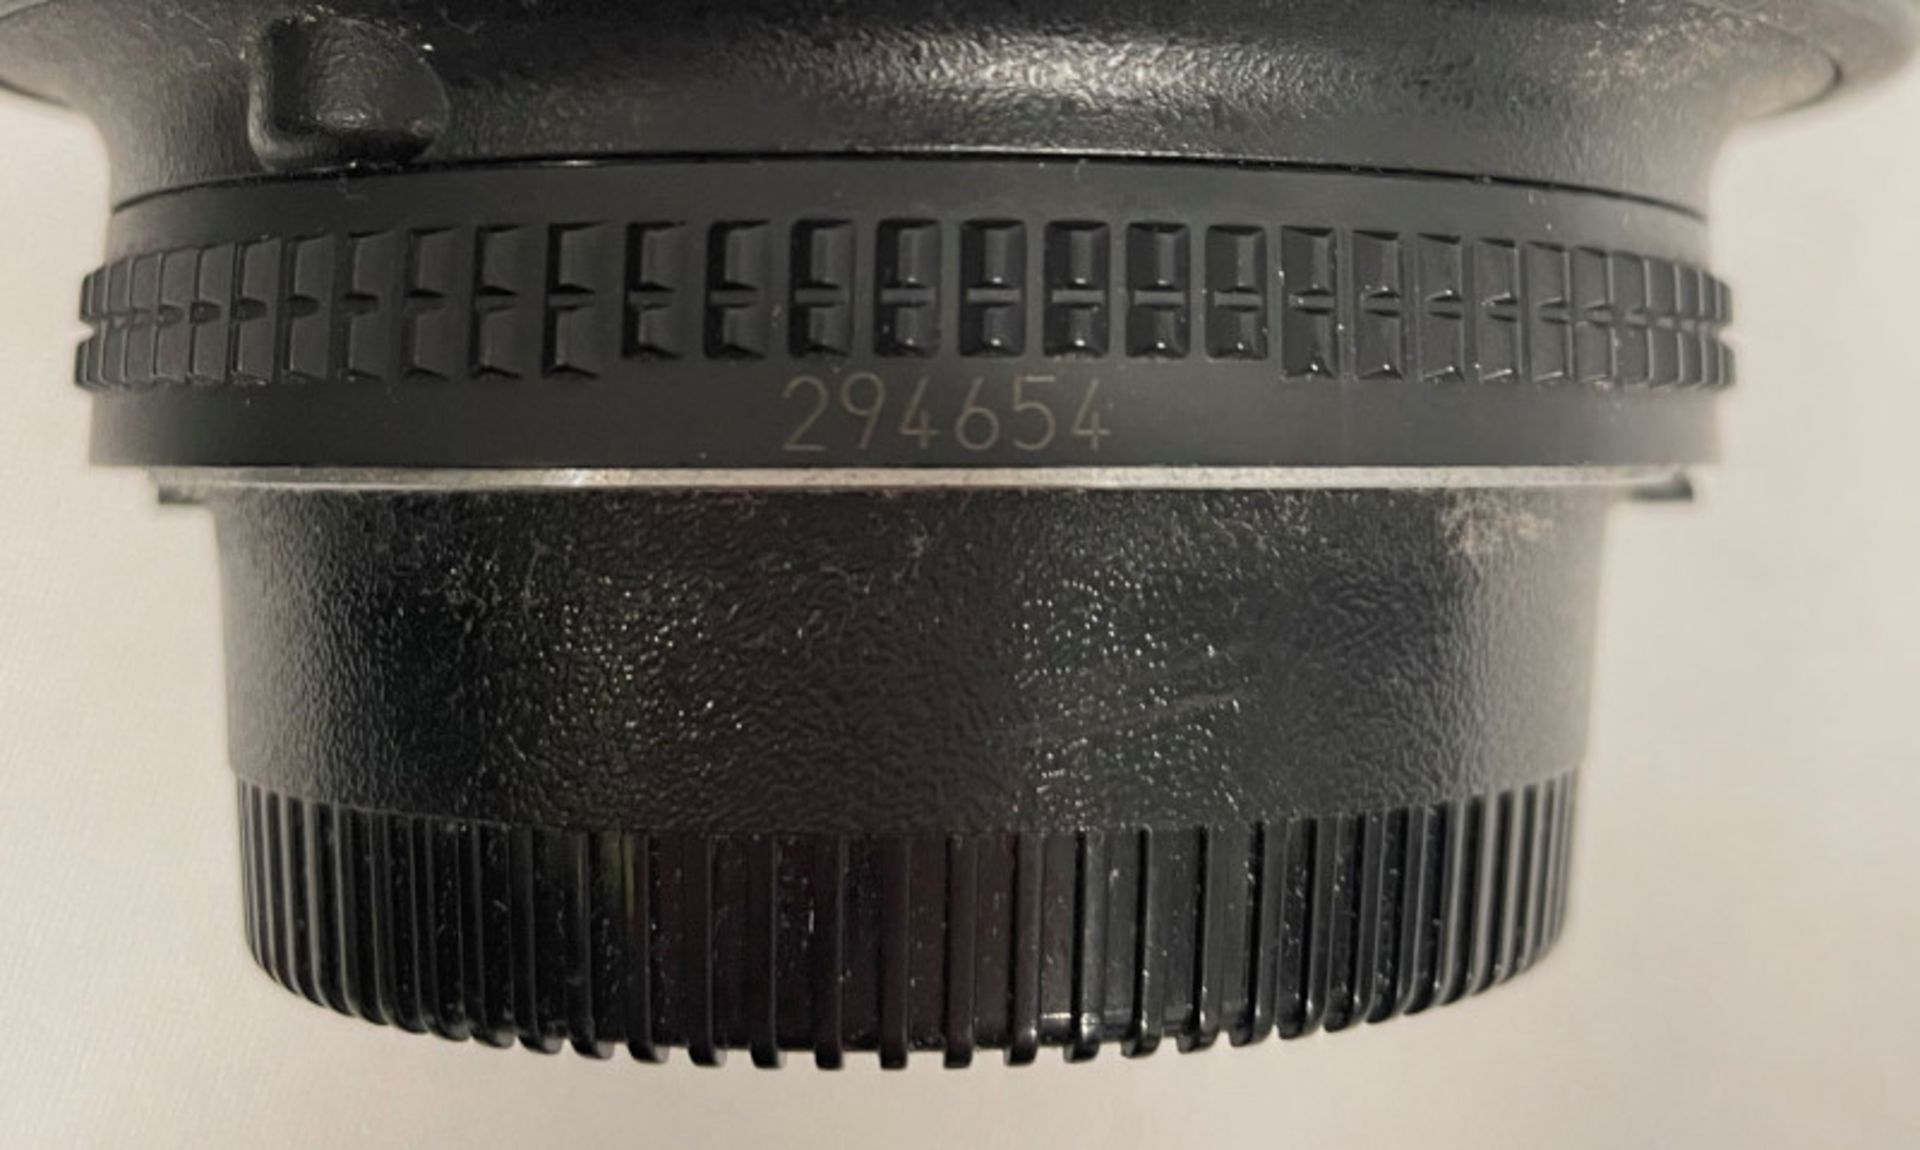 Nikon AF Nikkor 24-85mm - 1:2.8-4 D Lens - Serial No. 294654 - Image 7 of 7